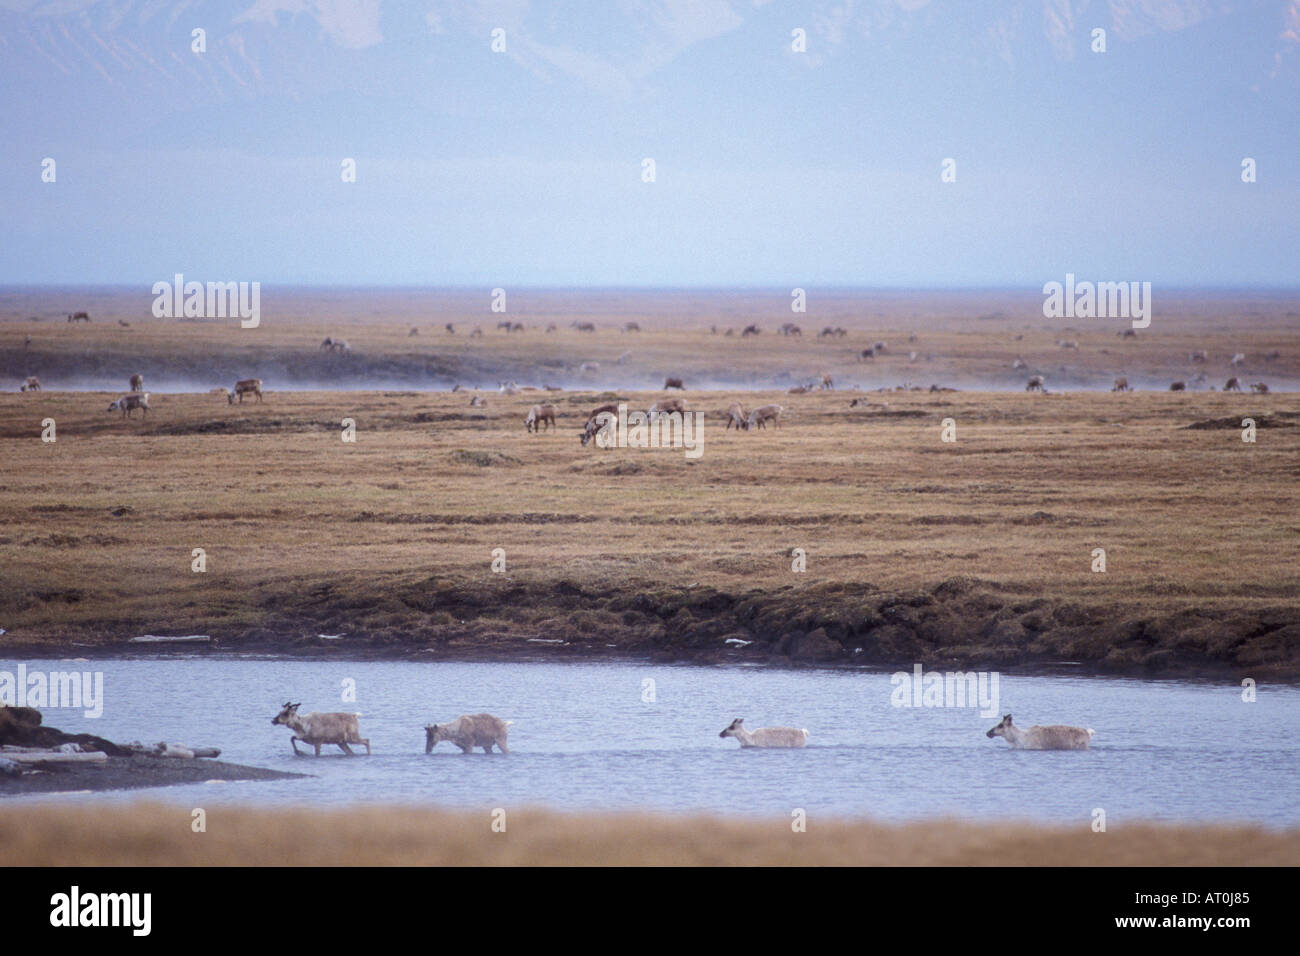 Le caribou de la toundra Rangifer tarandus porcupine traversant une rivière 1002 Salon Arctic National Wildlife Refuge en Alaska Banque D'Images